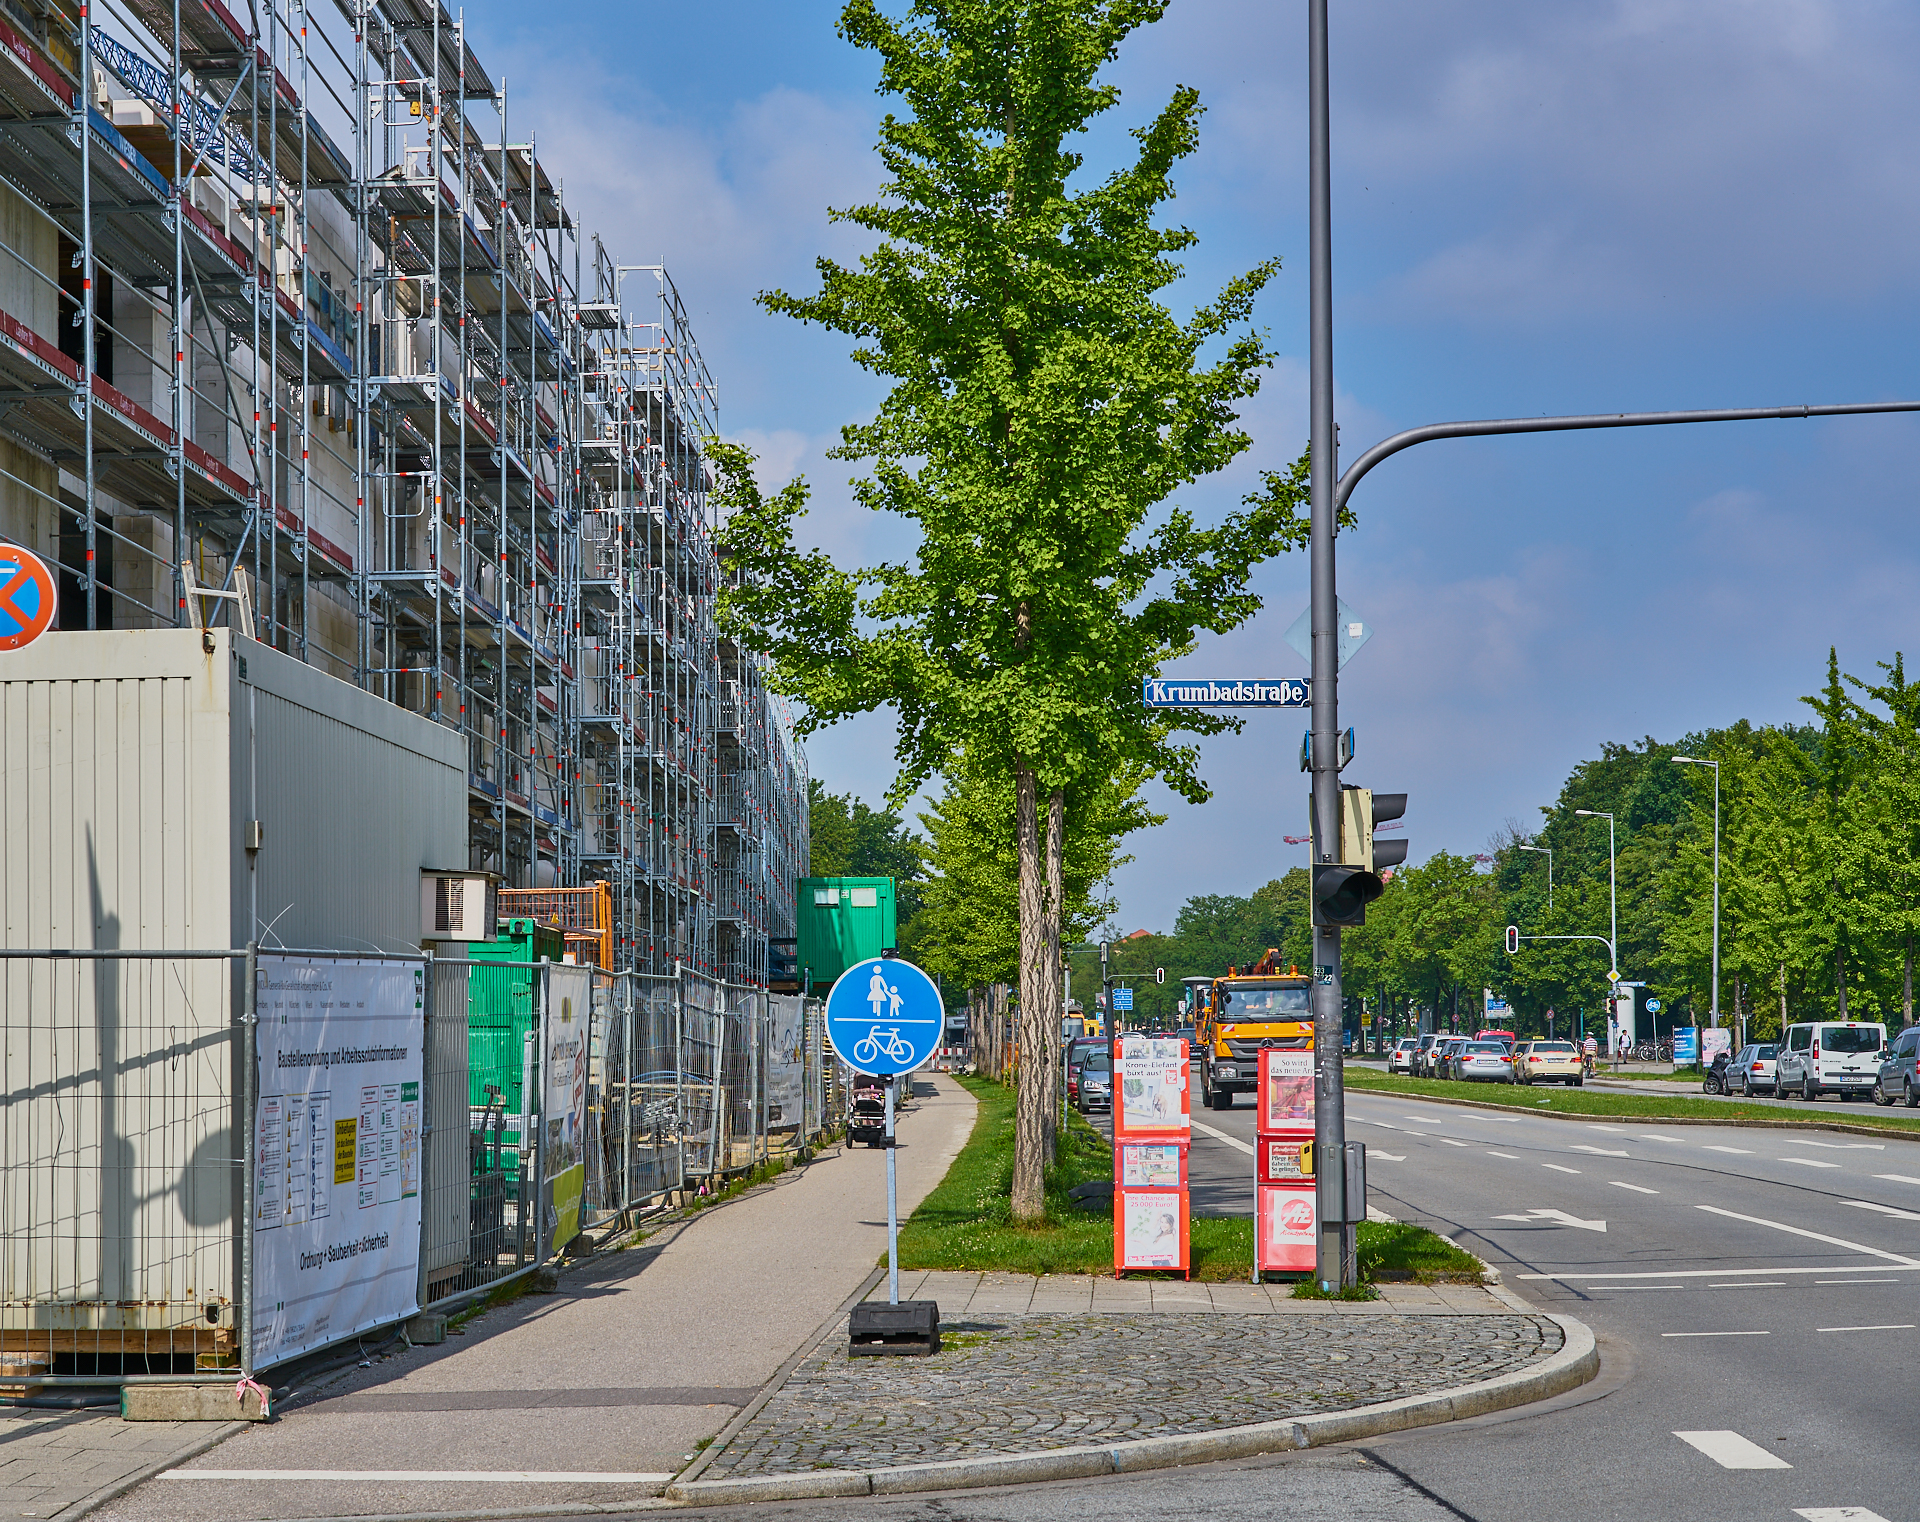 08.06.2018 - Baustelle Maikäfersiedlung in der Bad Schachener Straße in Neuperlach